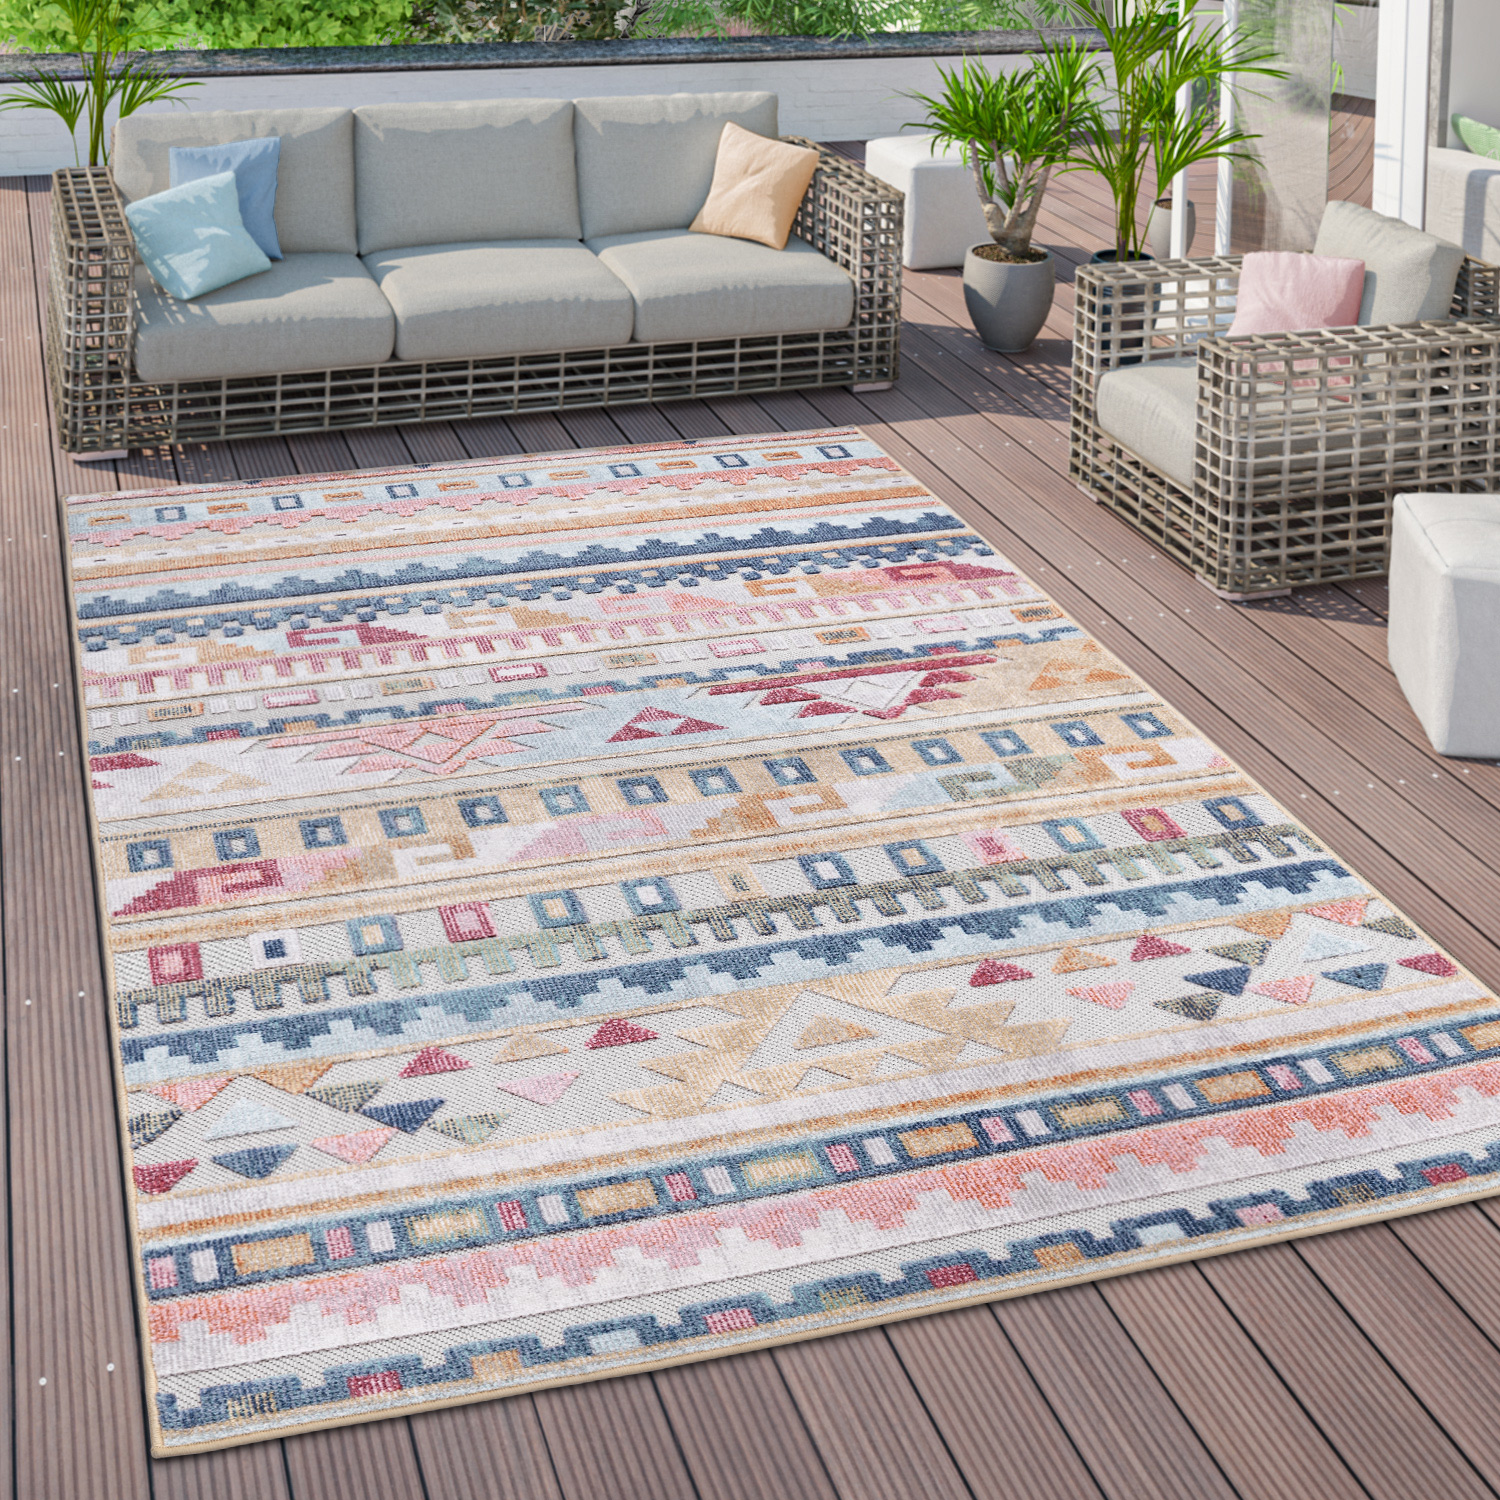 Outdoor Teppich Terrasse Ethno Streifen Muster Mehrfarbig Modern